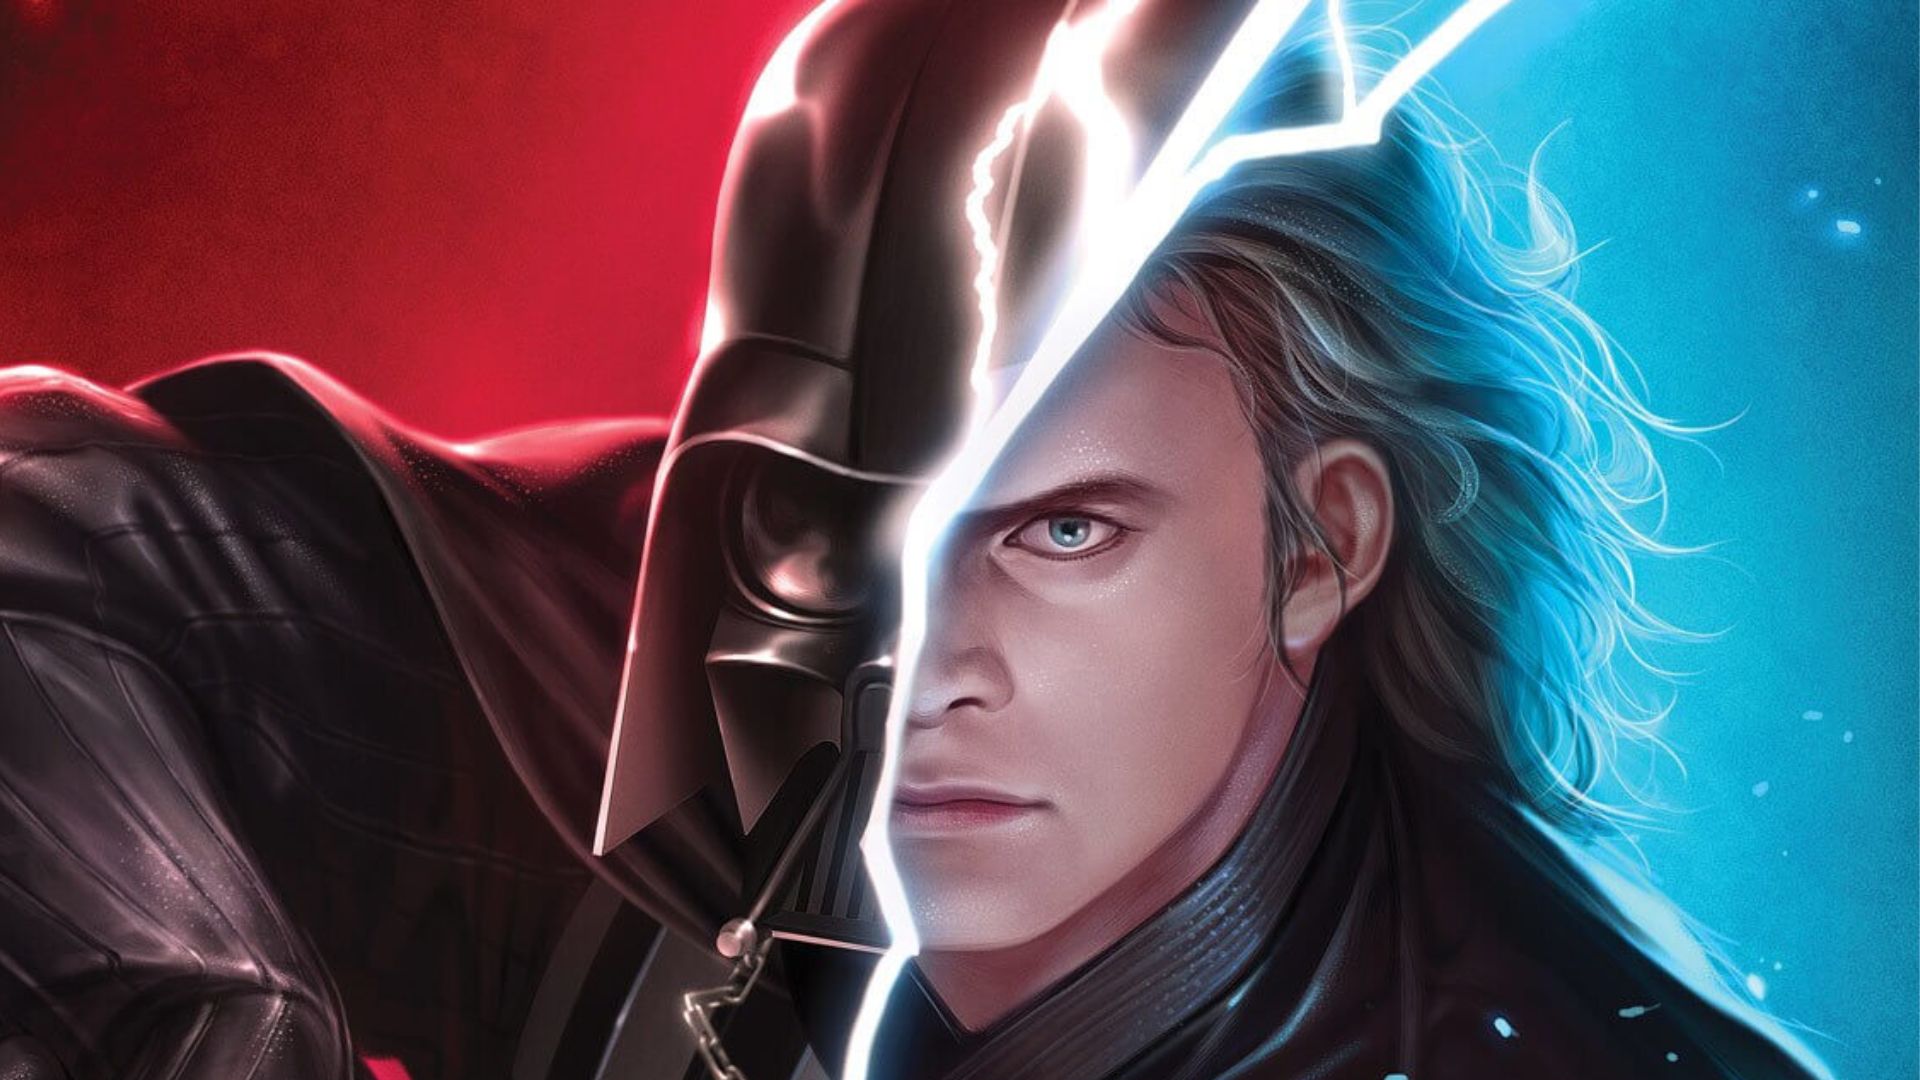 A Jornada de Anakin Skywalker: Da Ascensão de um Herói à Queda e Redenção de Darth Vader